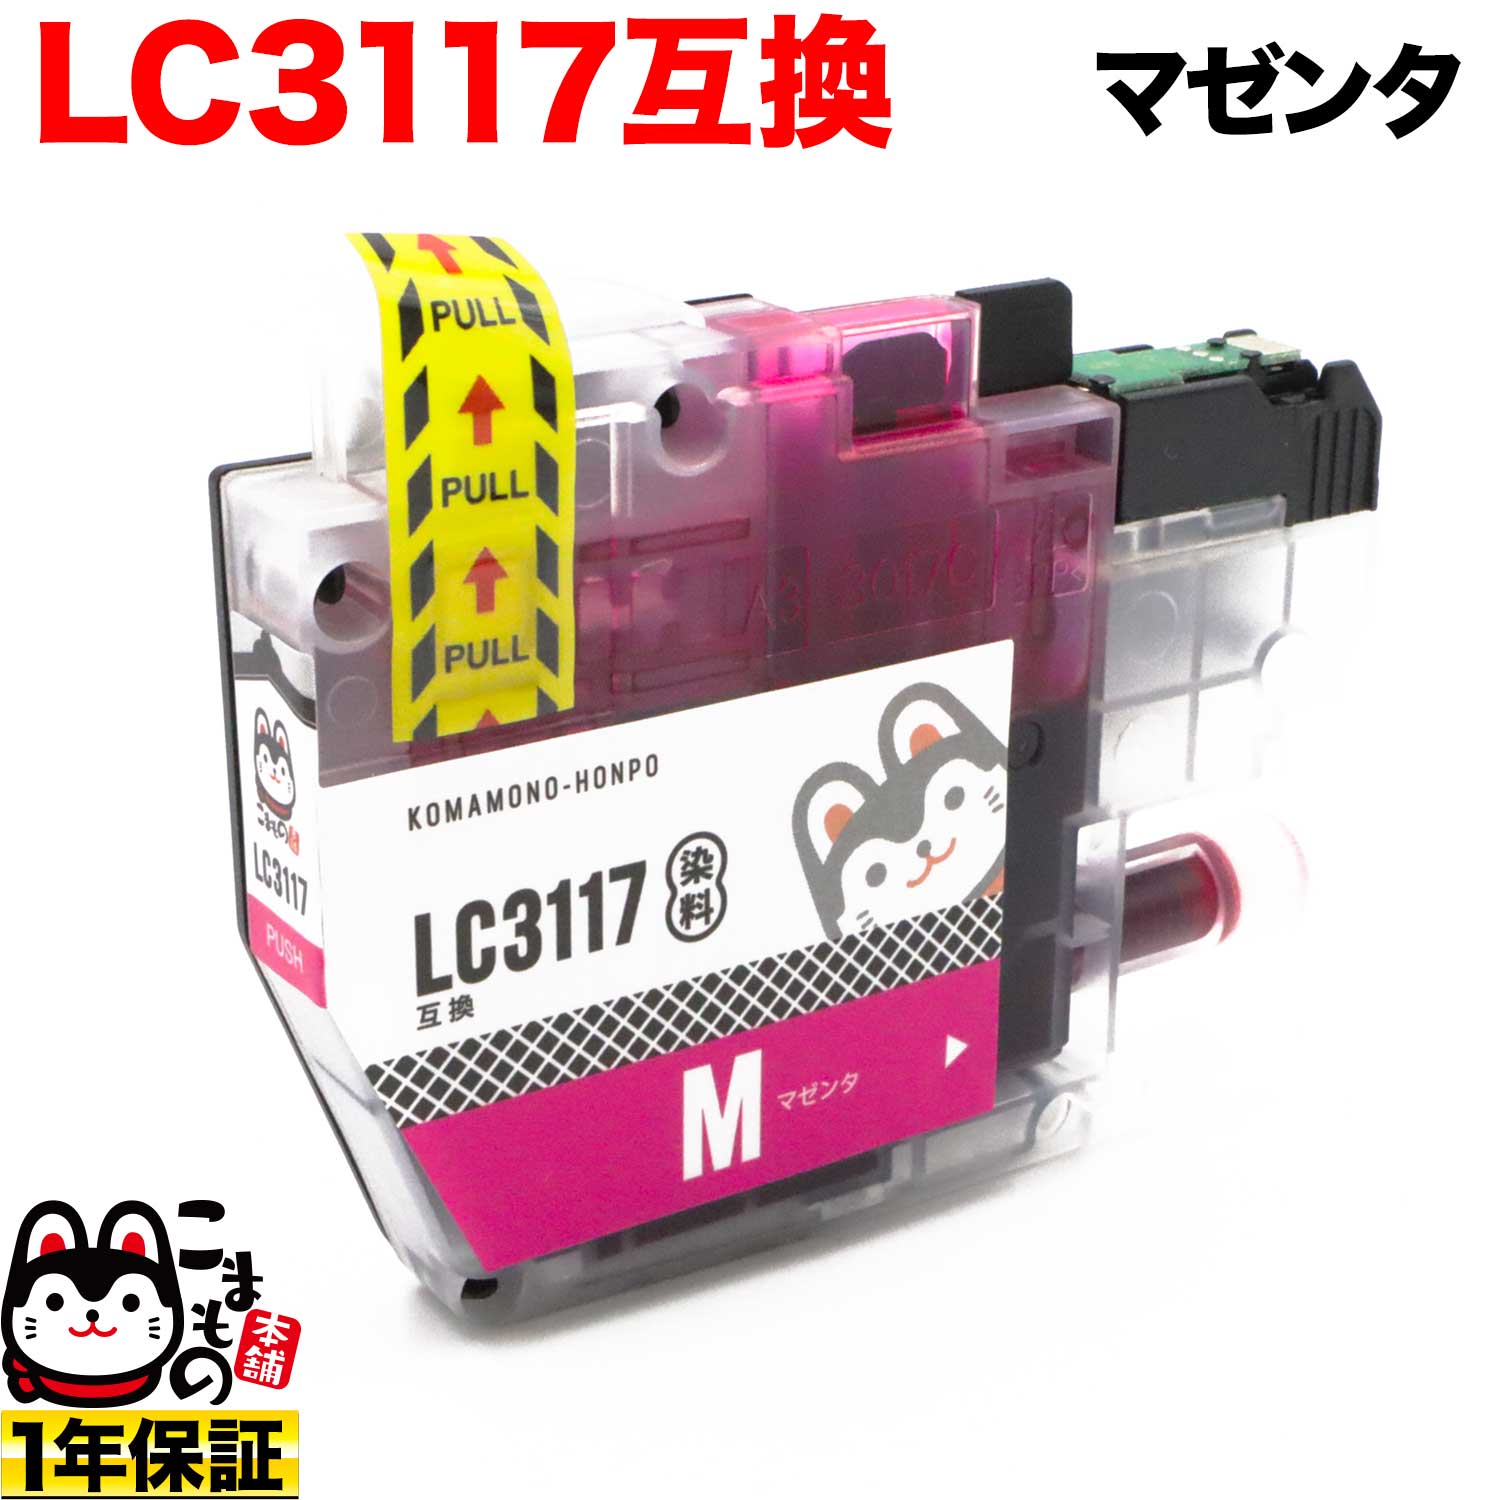 Lc3117m ブラザー用 Lc3117 互換インクカートリッジ マゼンタ メール便送料無料 マゼンタ 品番 Qr Lc3117m 商品詳細 こまもの本舗